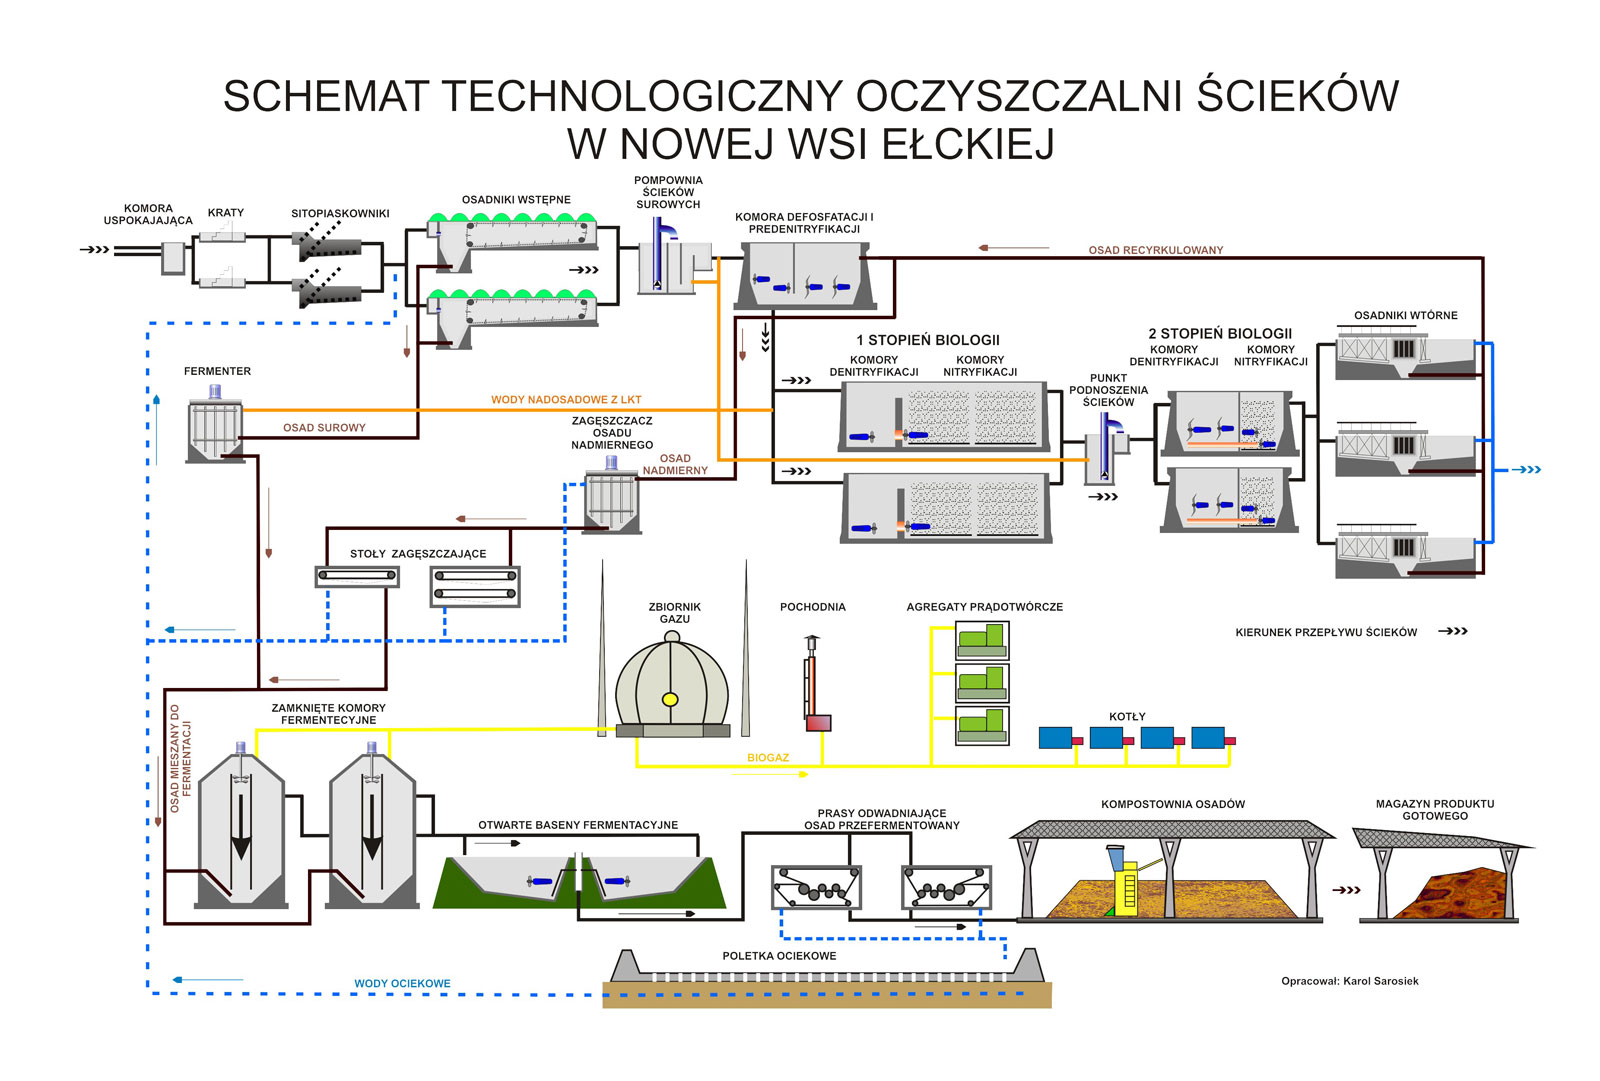 Schemat technologiczny oczyszczalni ścieków w Nowej Wsi Ełckiej